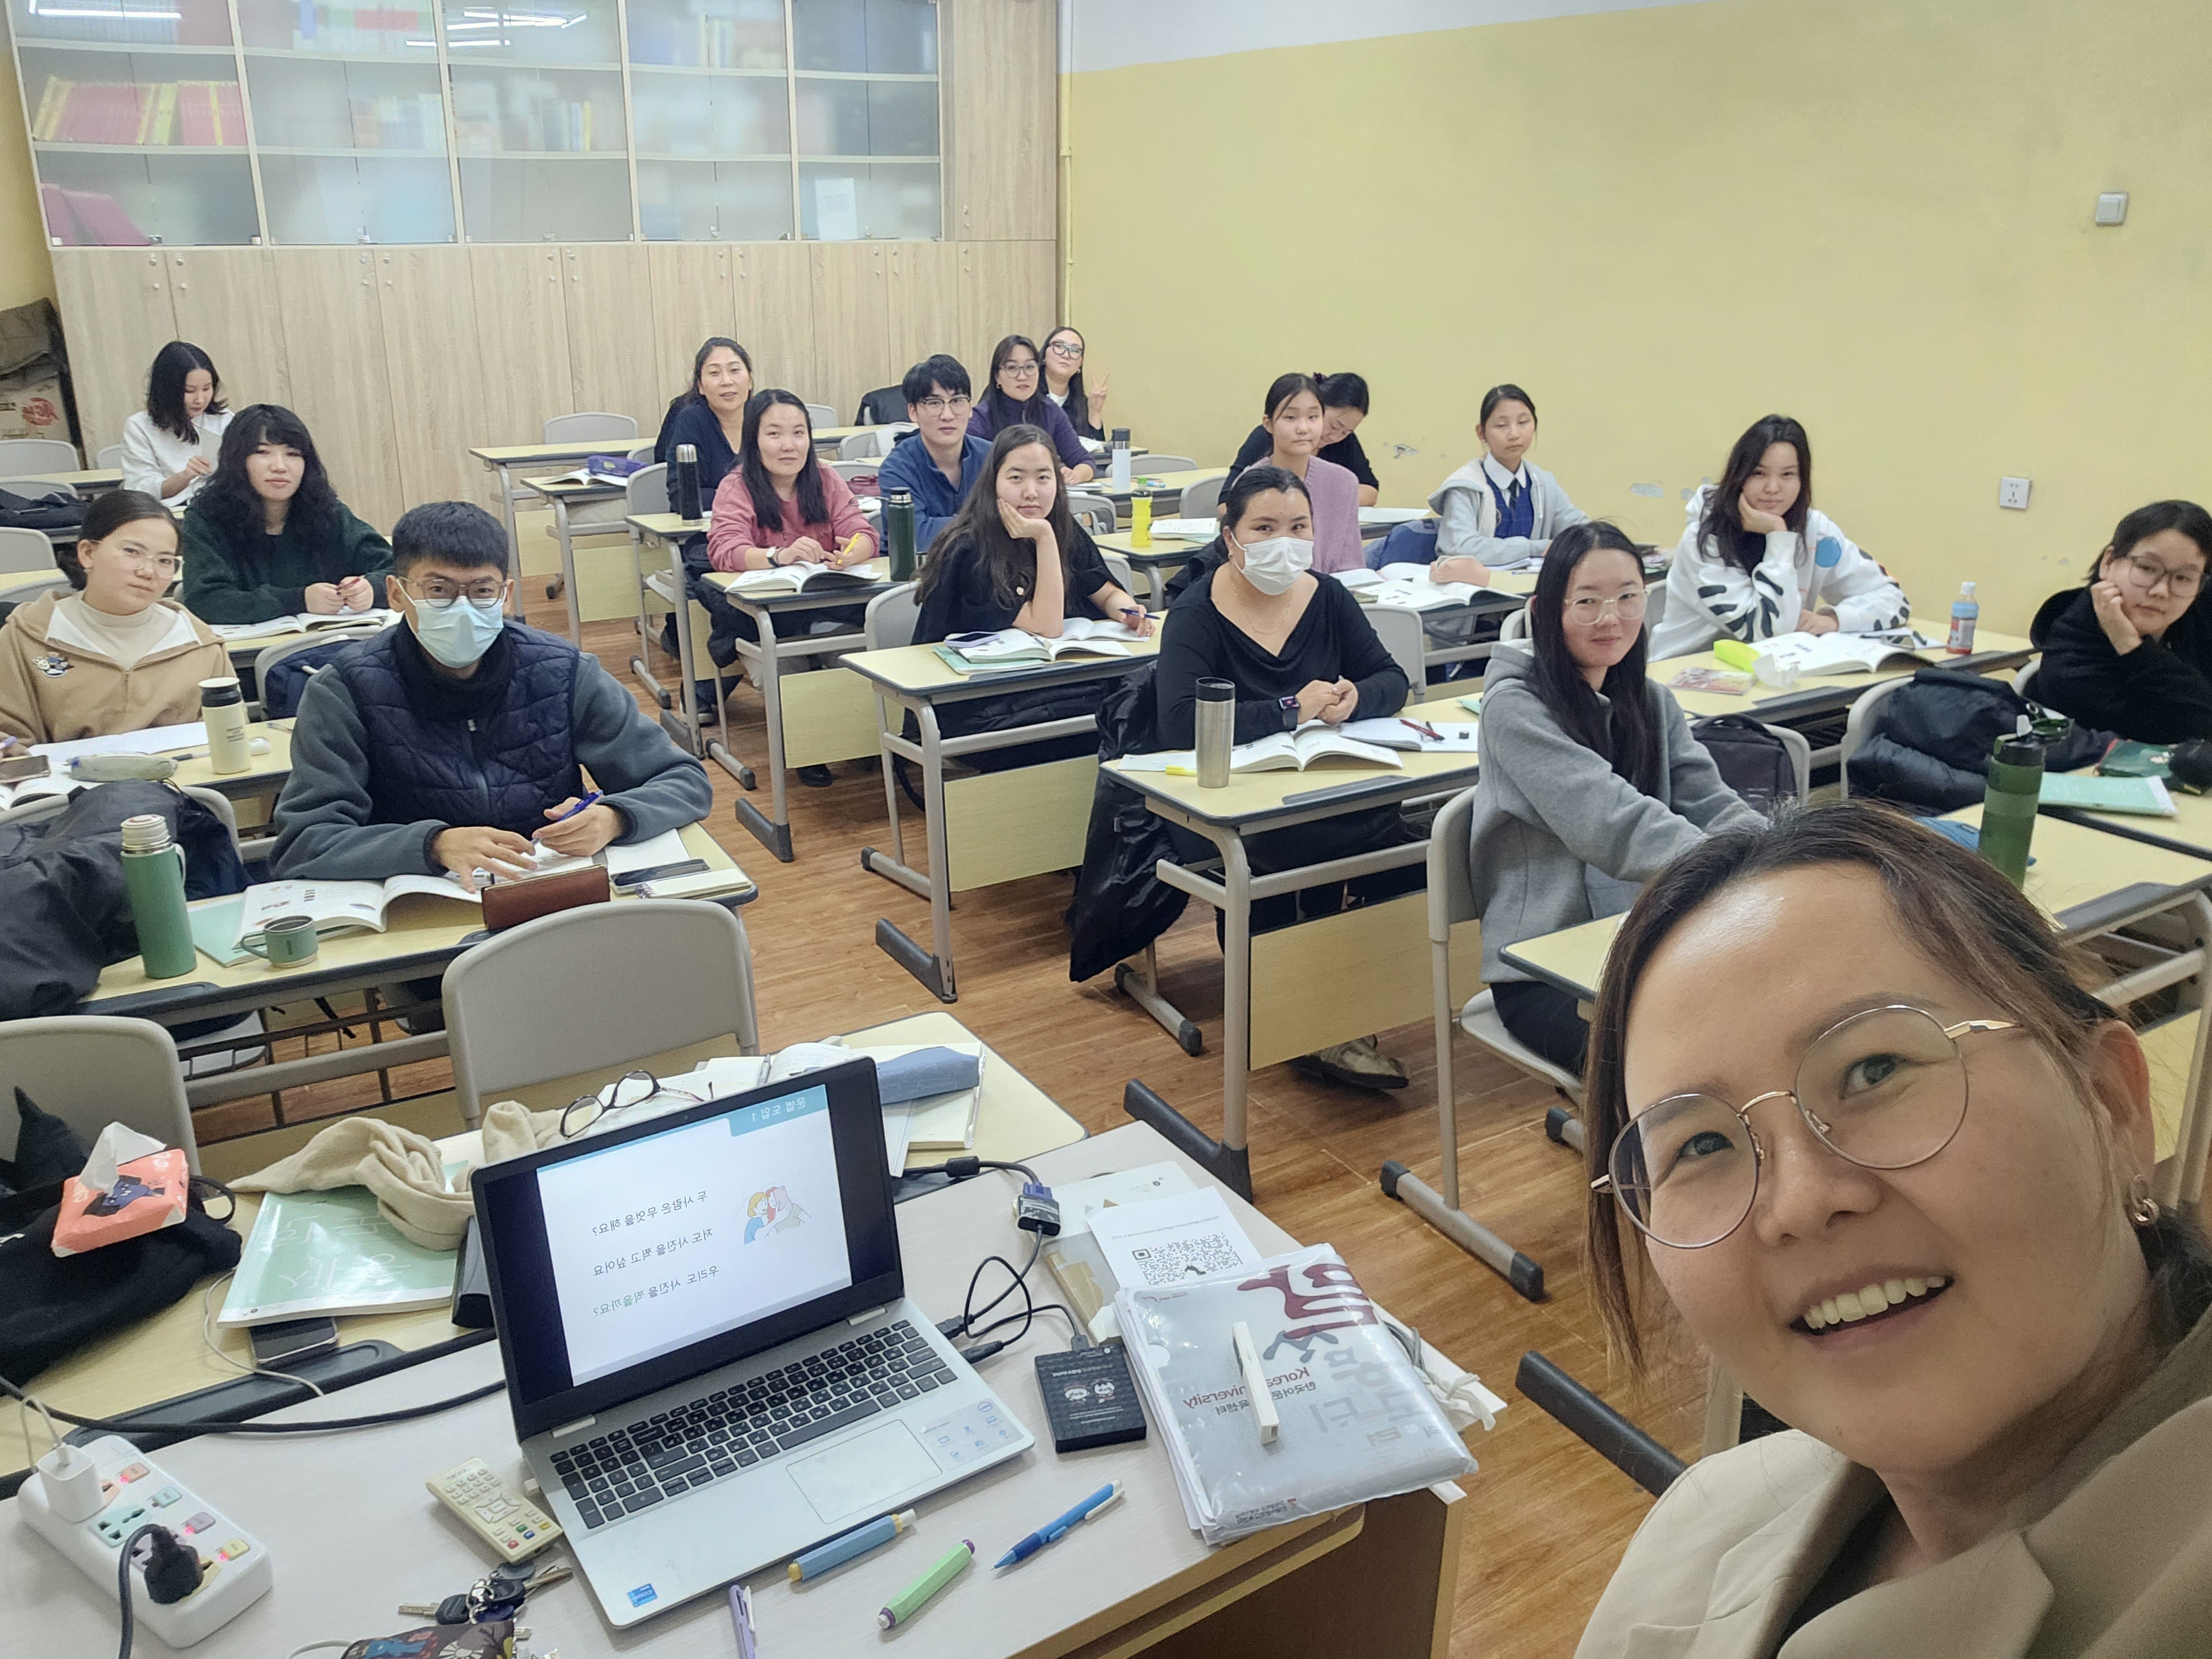 < '케이팝으로 배우는 한국어' 자율반 프로그램에 참여한 학생들 - 출처: 치메드 게렐마 선생님 제공 >